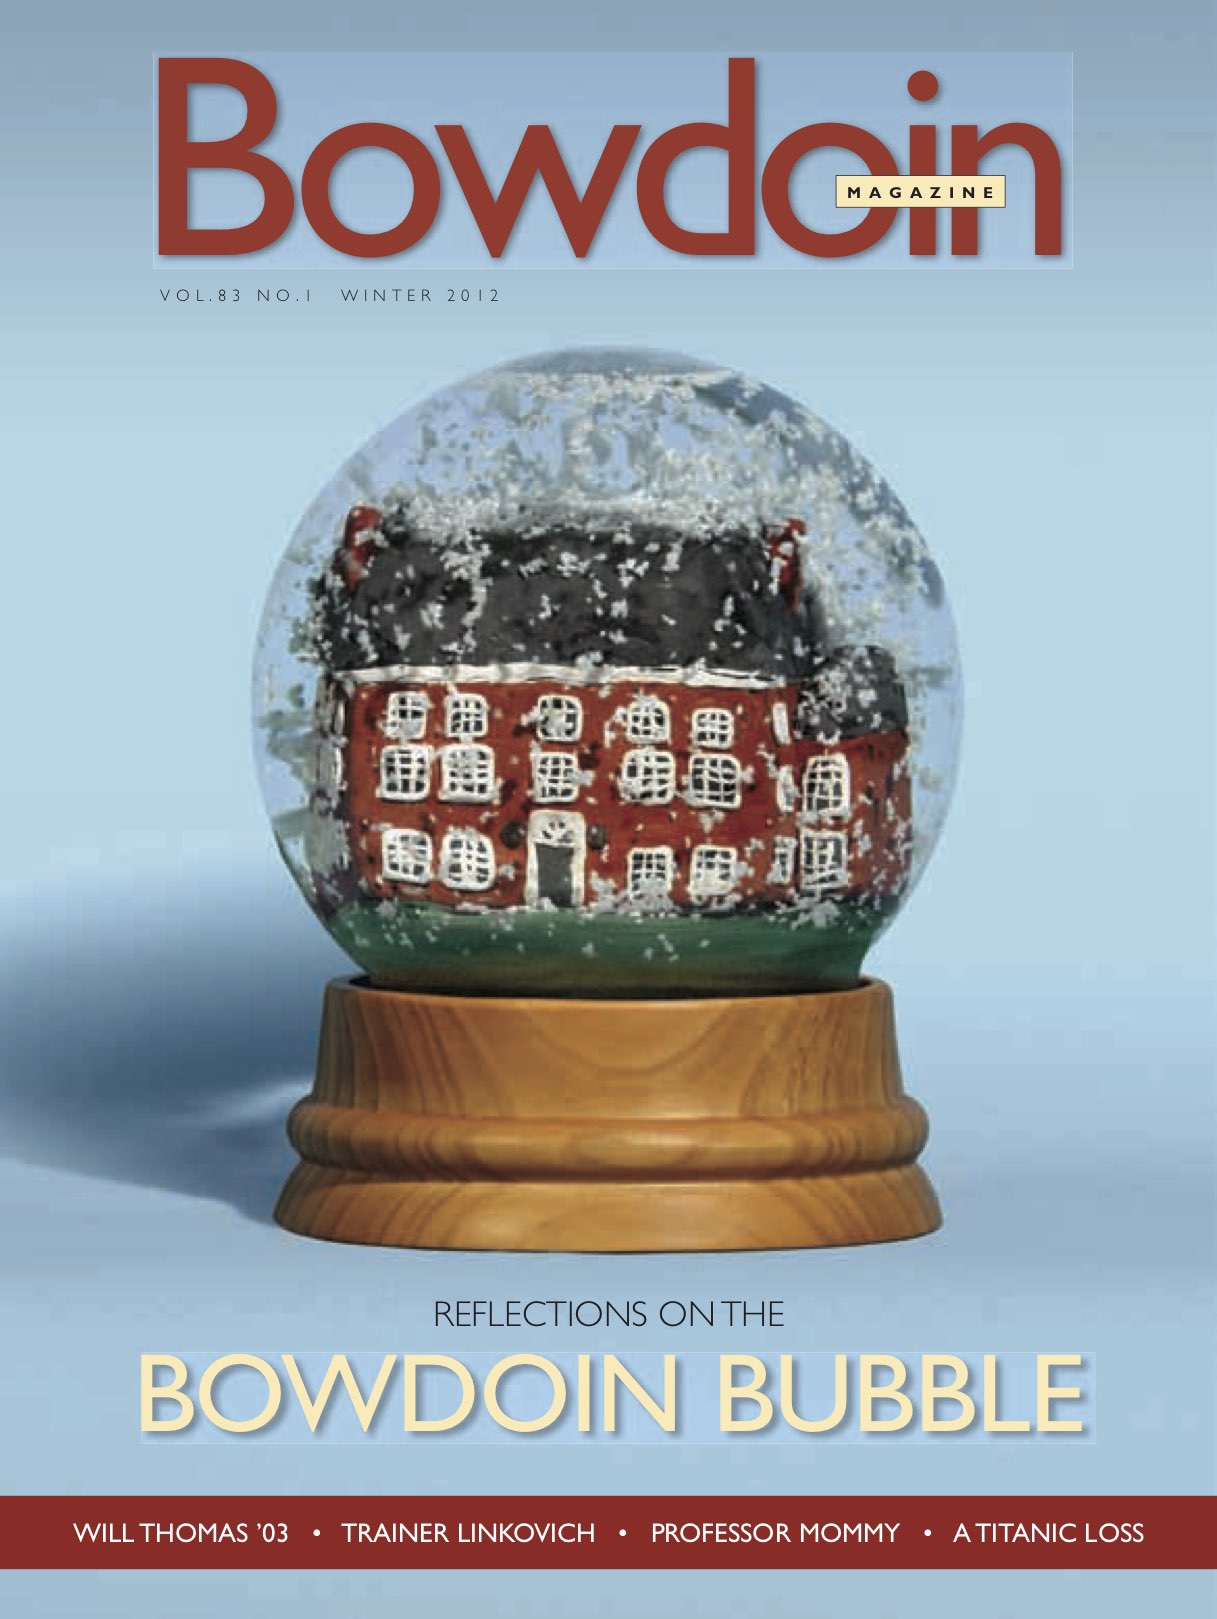 Winter 2012 Bowdoin Magazine cover